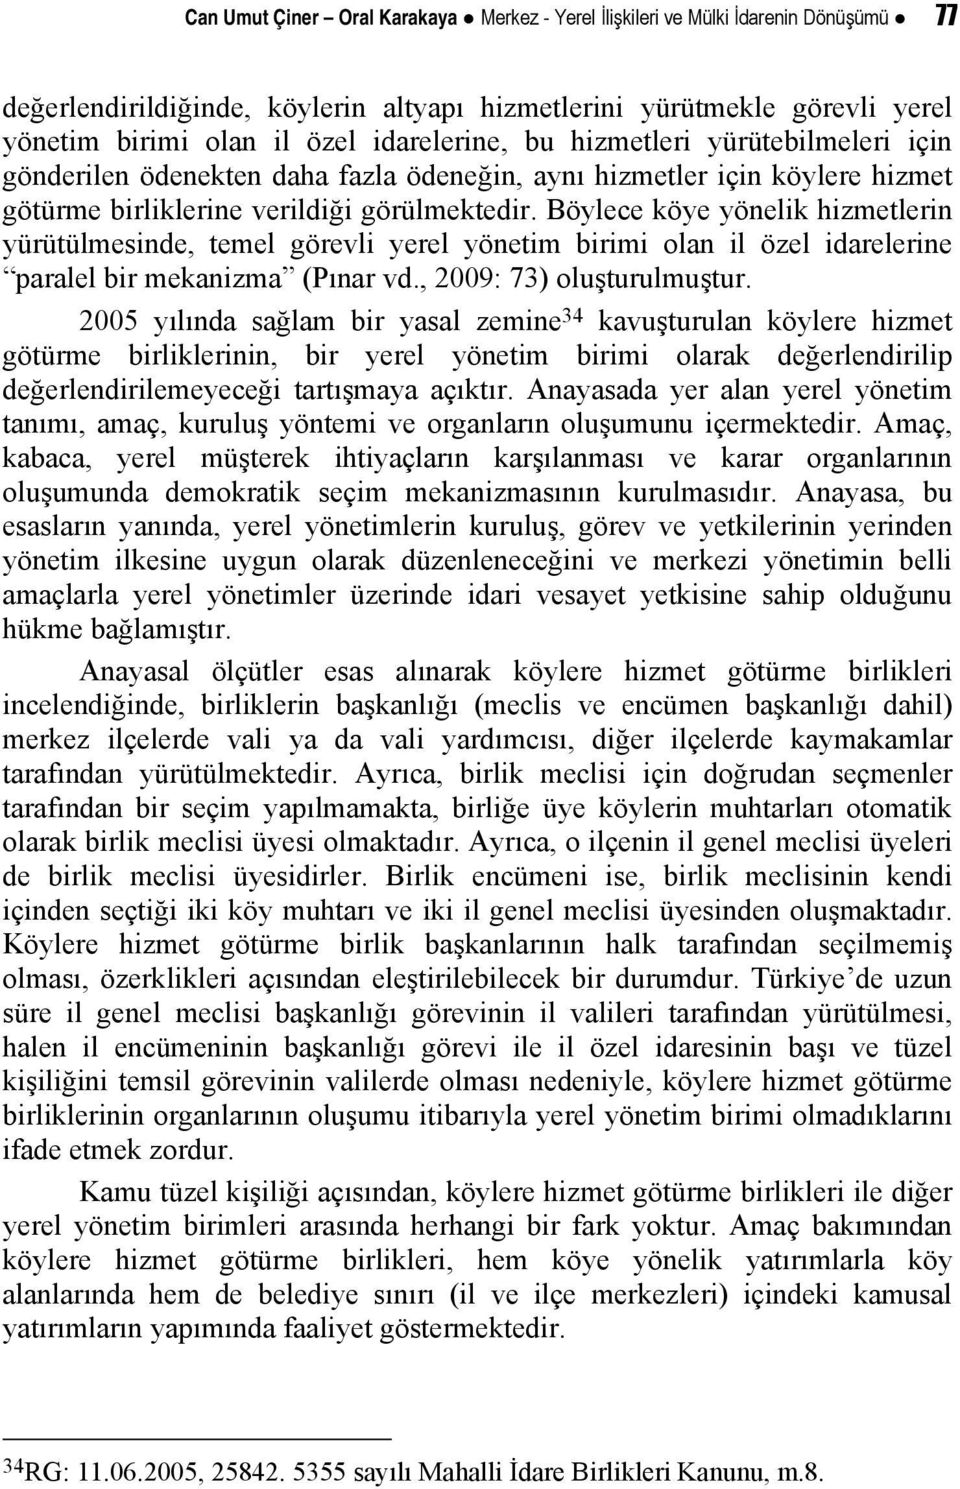 Böylece köye yönelik hizmetlerin yürütülmesinde, temel görevli yerel yönetim birimi olan il özel idarelerine paralel bir mekanizma (Pınar vd., 2009: 73) oluşturulmuştur.